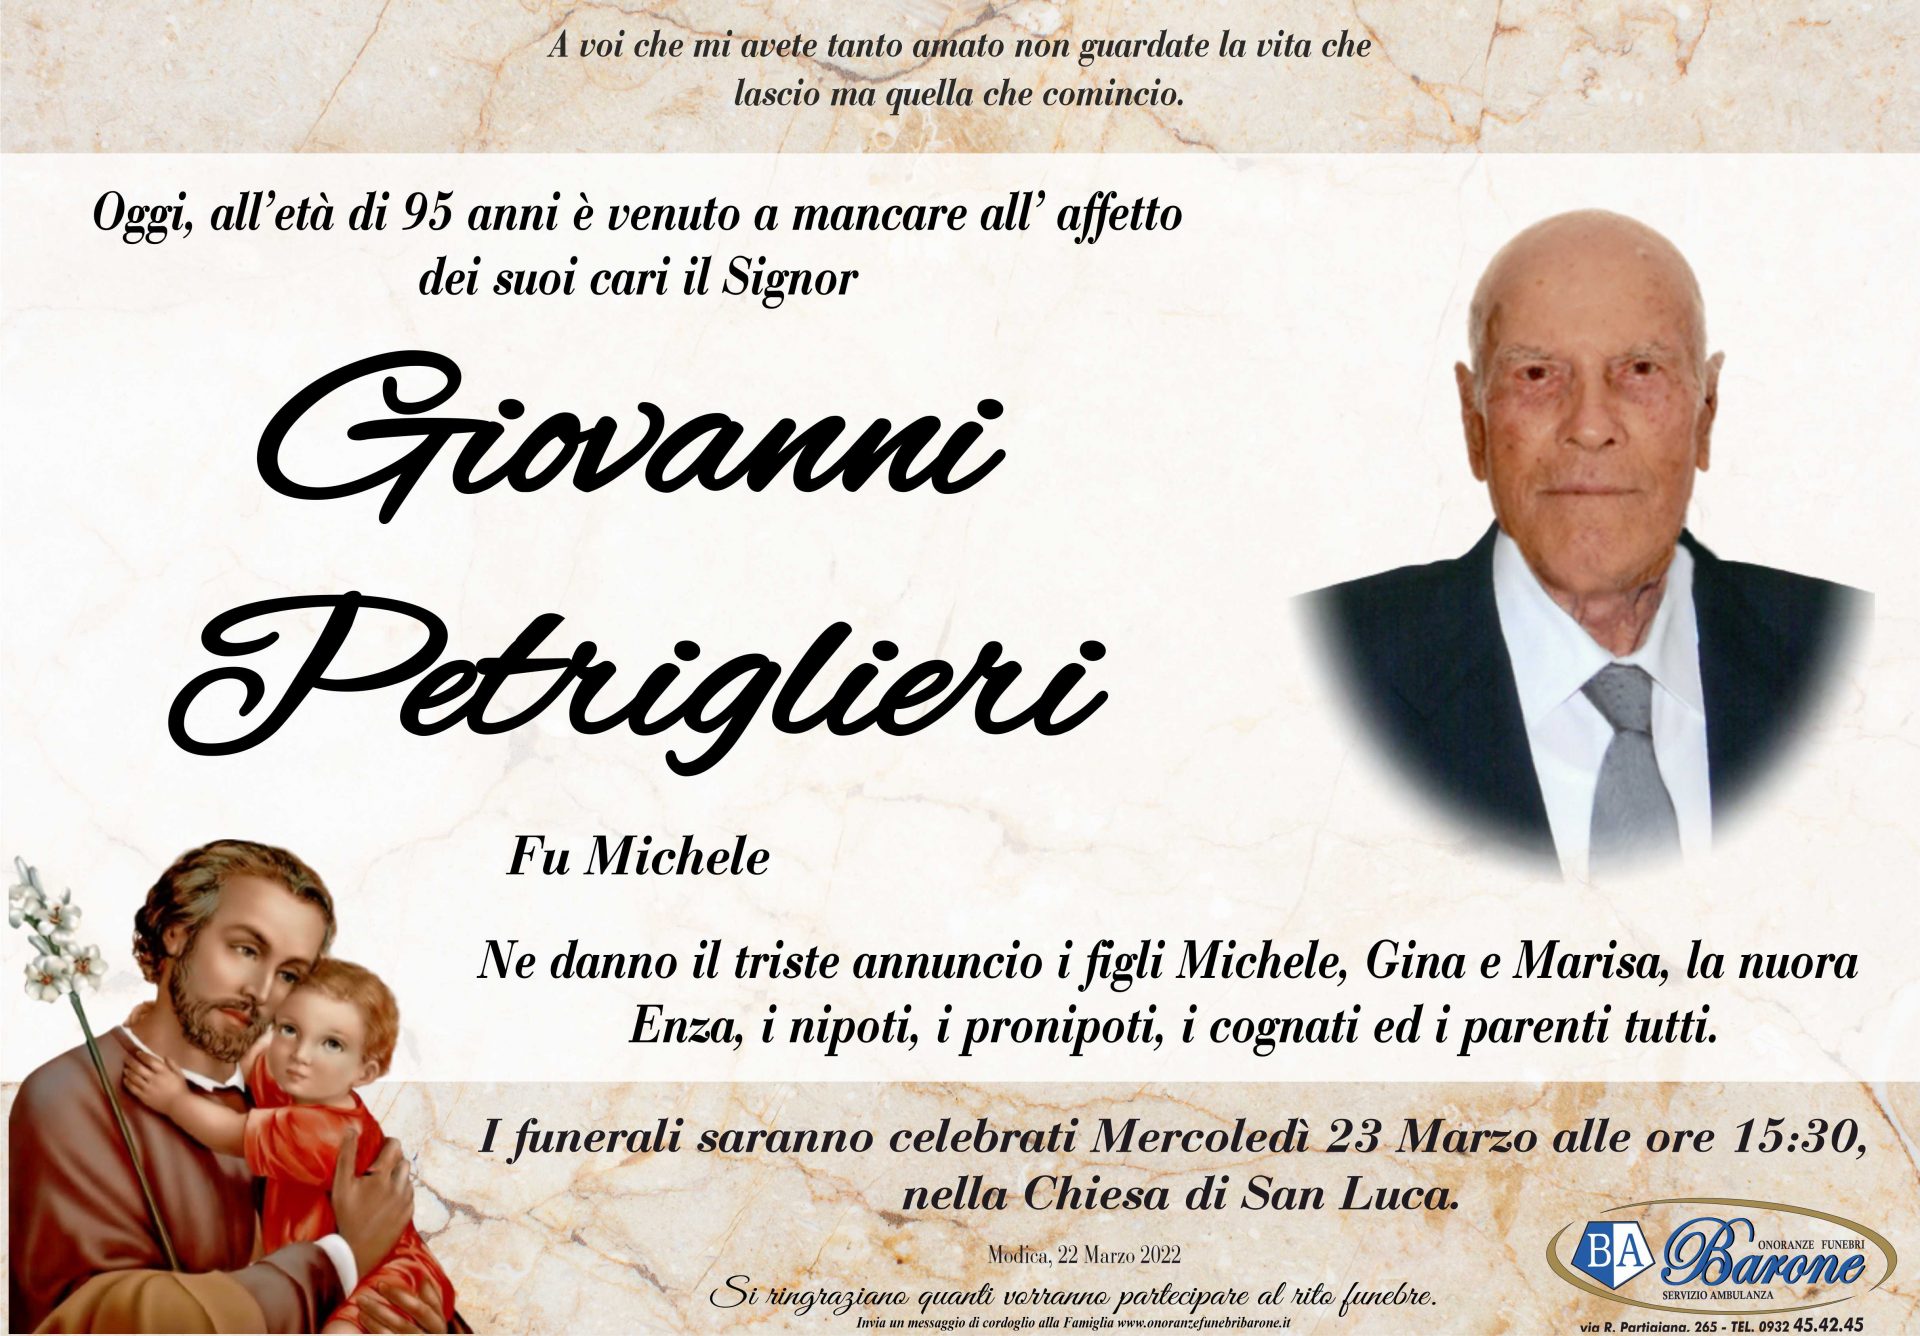 Giovanni Petriglieri